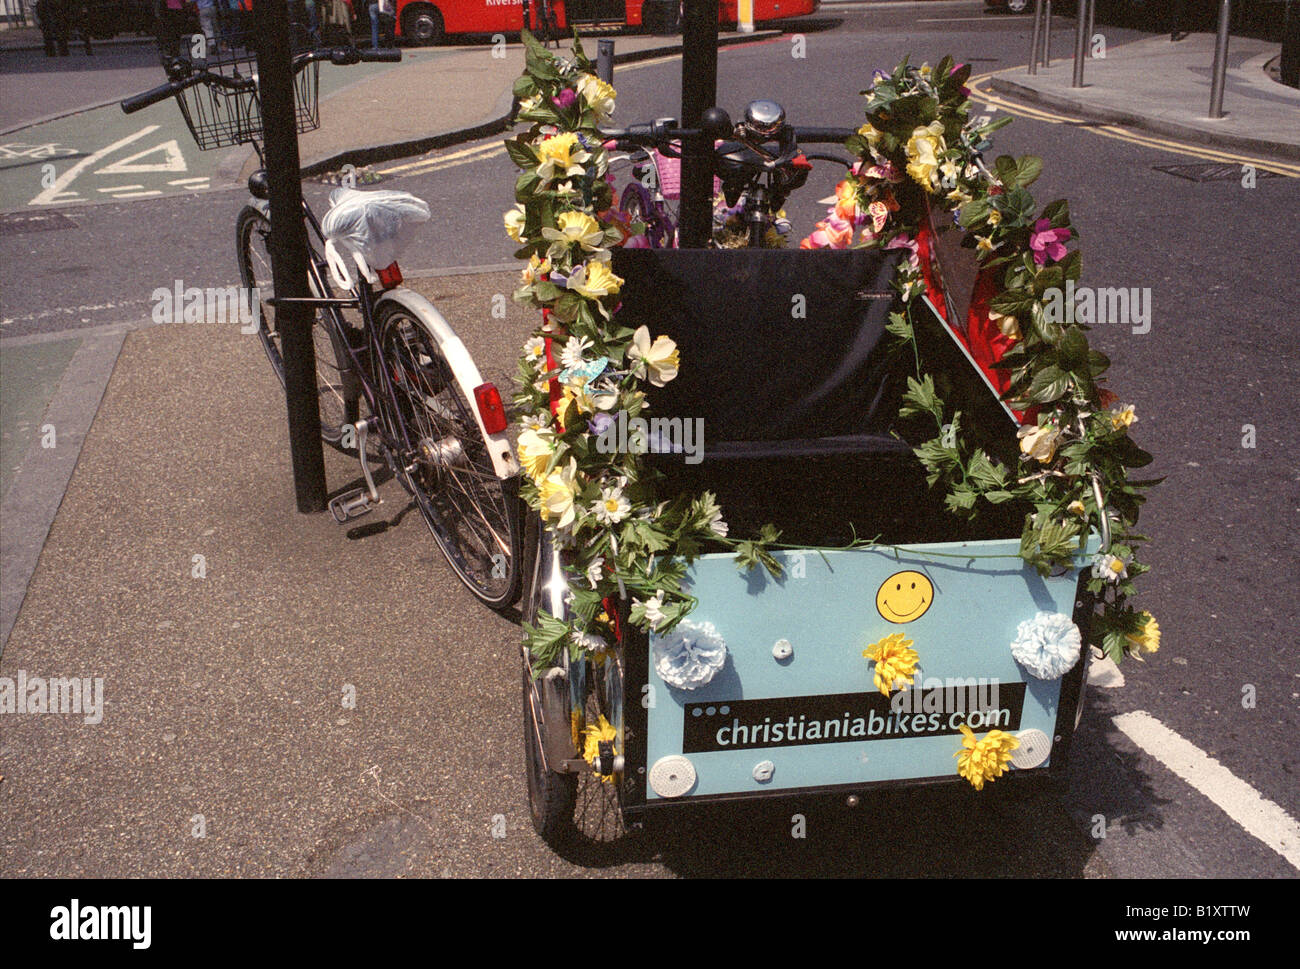 Inghilterra Londra triciclo adornato con fiori christiania bike Foto Stock